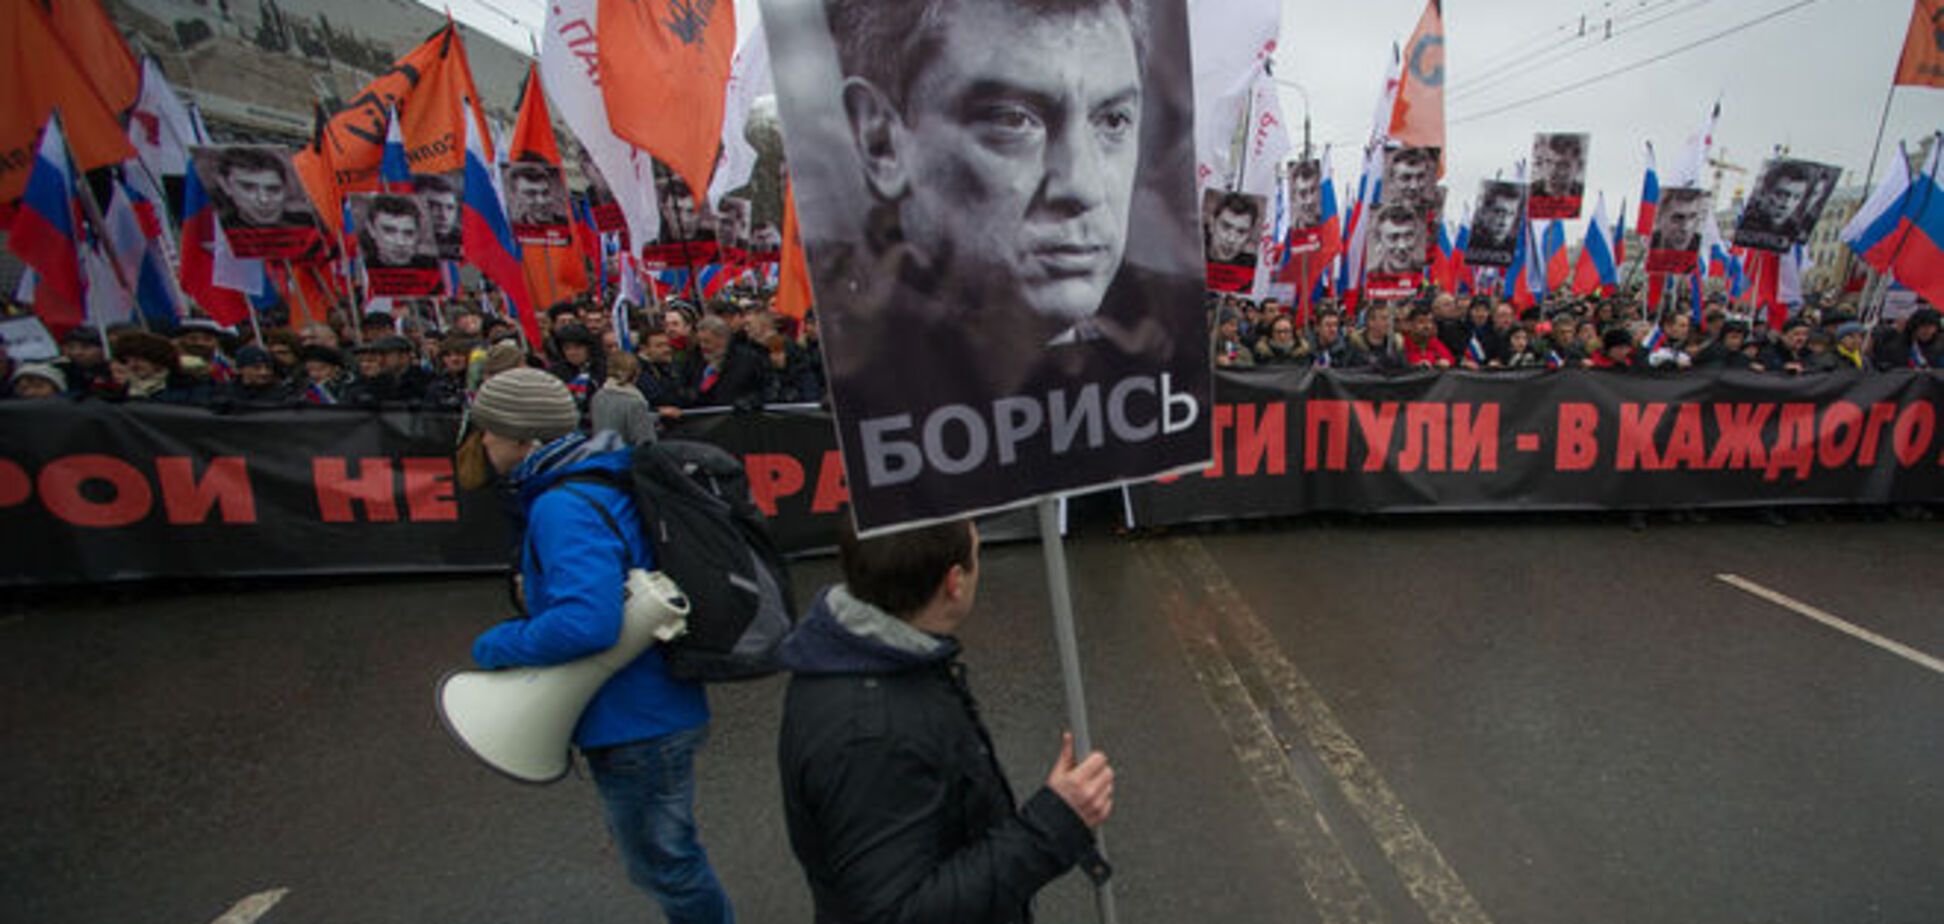 Мы уже соболезновали: Госдума не сочла нужным почтить память Немцова минутой молчания